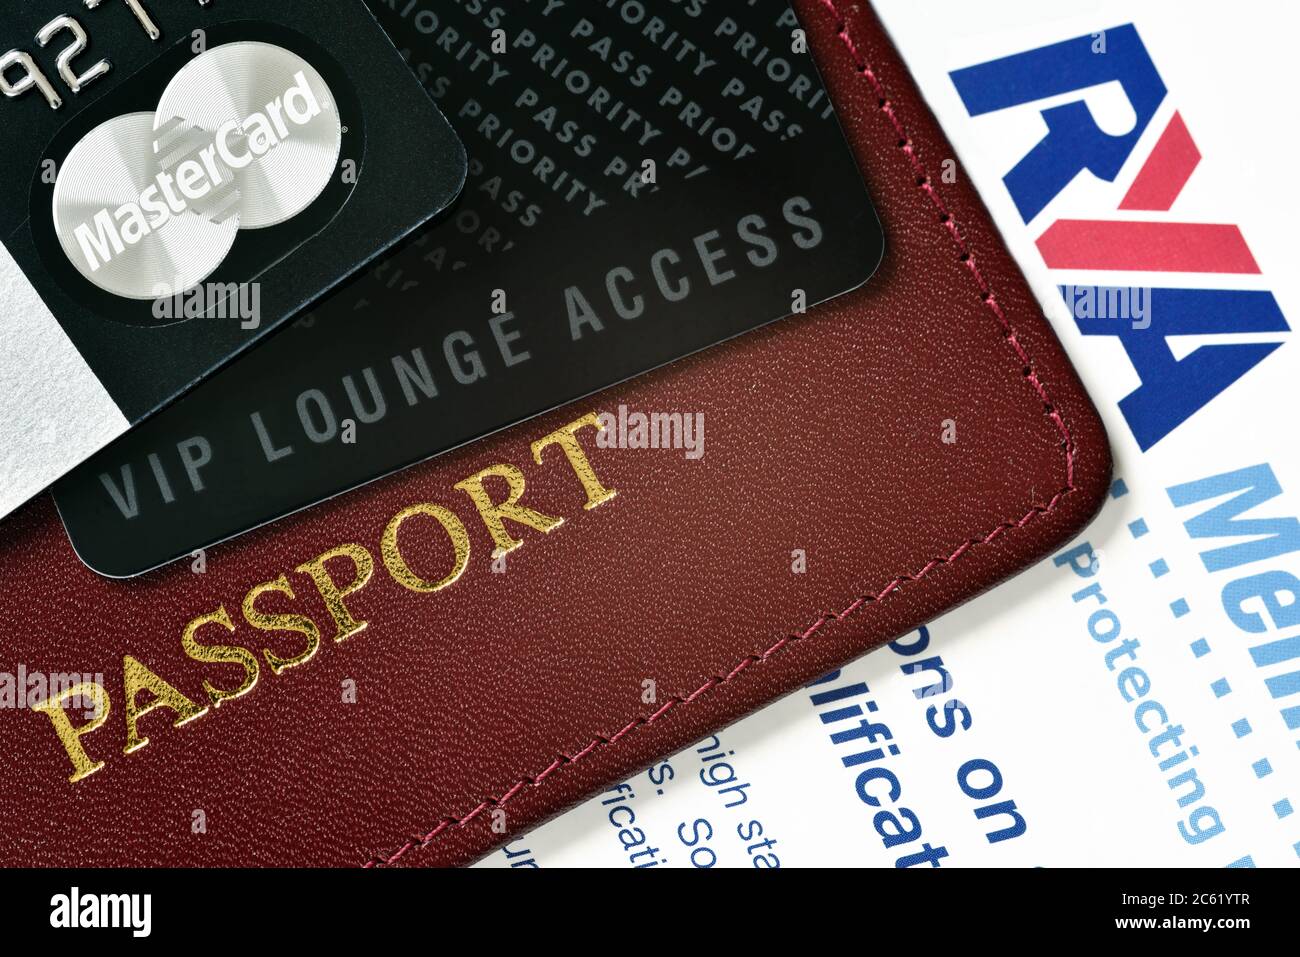 RUSSIA, MOSCA - 22 FEBBRAIO 2015: Carta di credito Premium MasterCard Black  Edition, carta Priority Pass (carta per accesso VIP lounge) e pastore  internazionale Foto stock - Alamy